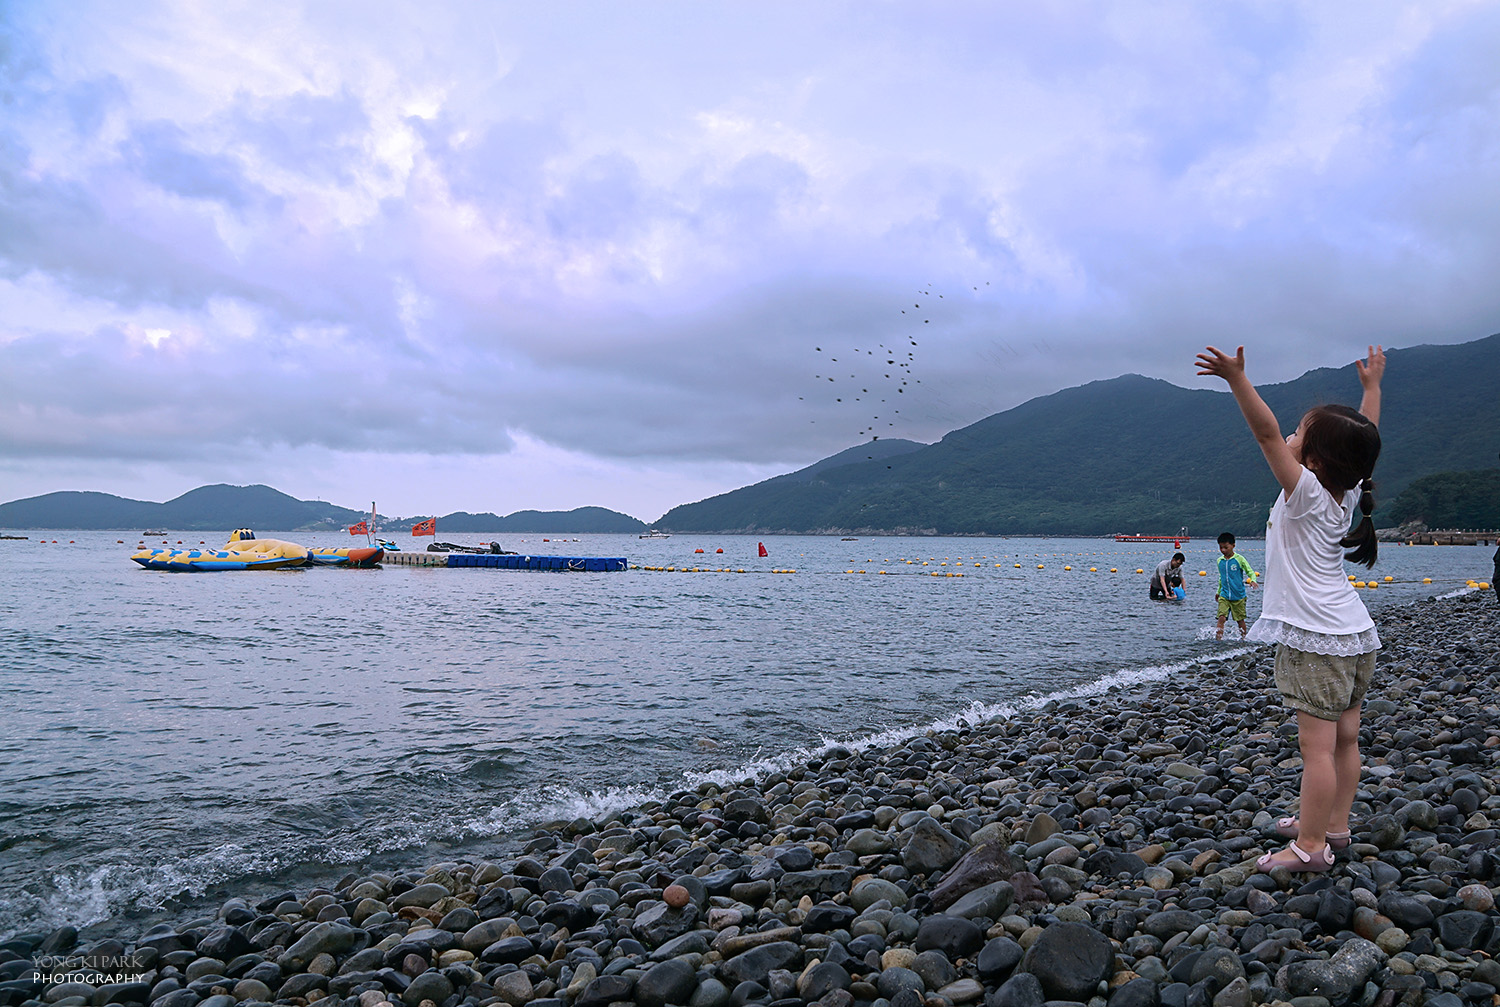 여름 바다를 향한 인사_바다에 인사를 하듯 외손녀는 작은 돌을 주워 바다를 향해 던지며 즐거워하였다. Sony ILCE-6000, 16 mm with E 16-70mm F4 ZA OSS, f/5.6, 1/80 s, ISO100